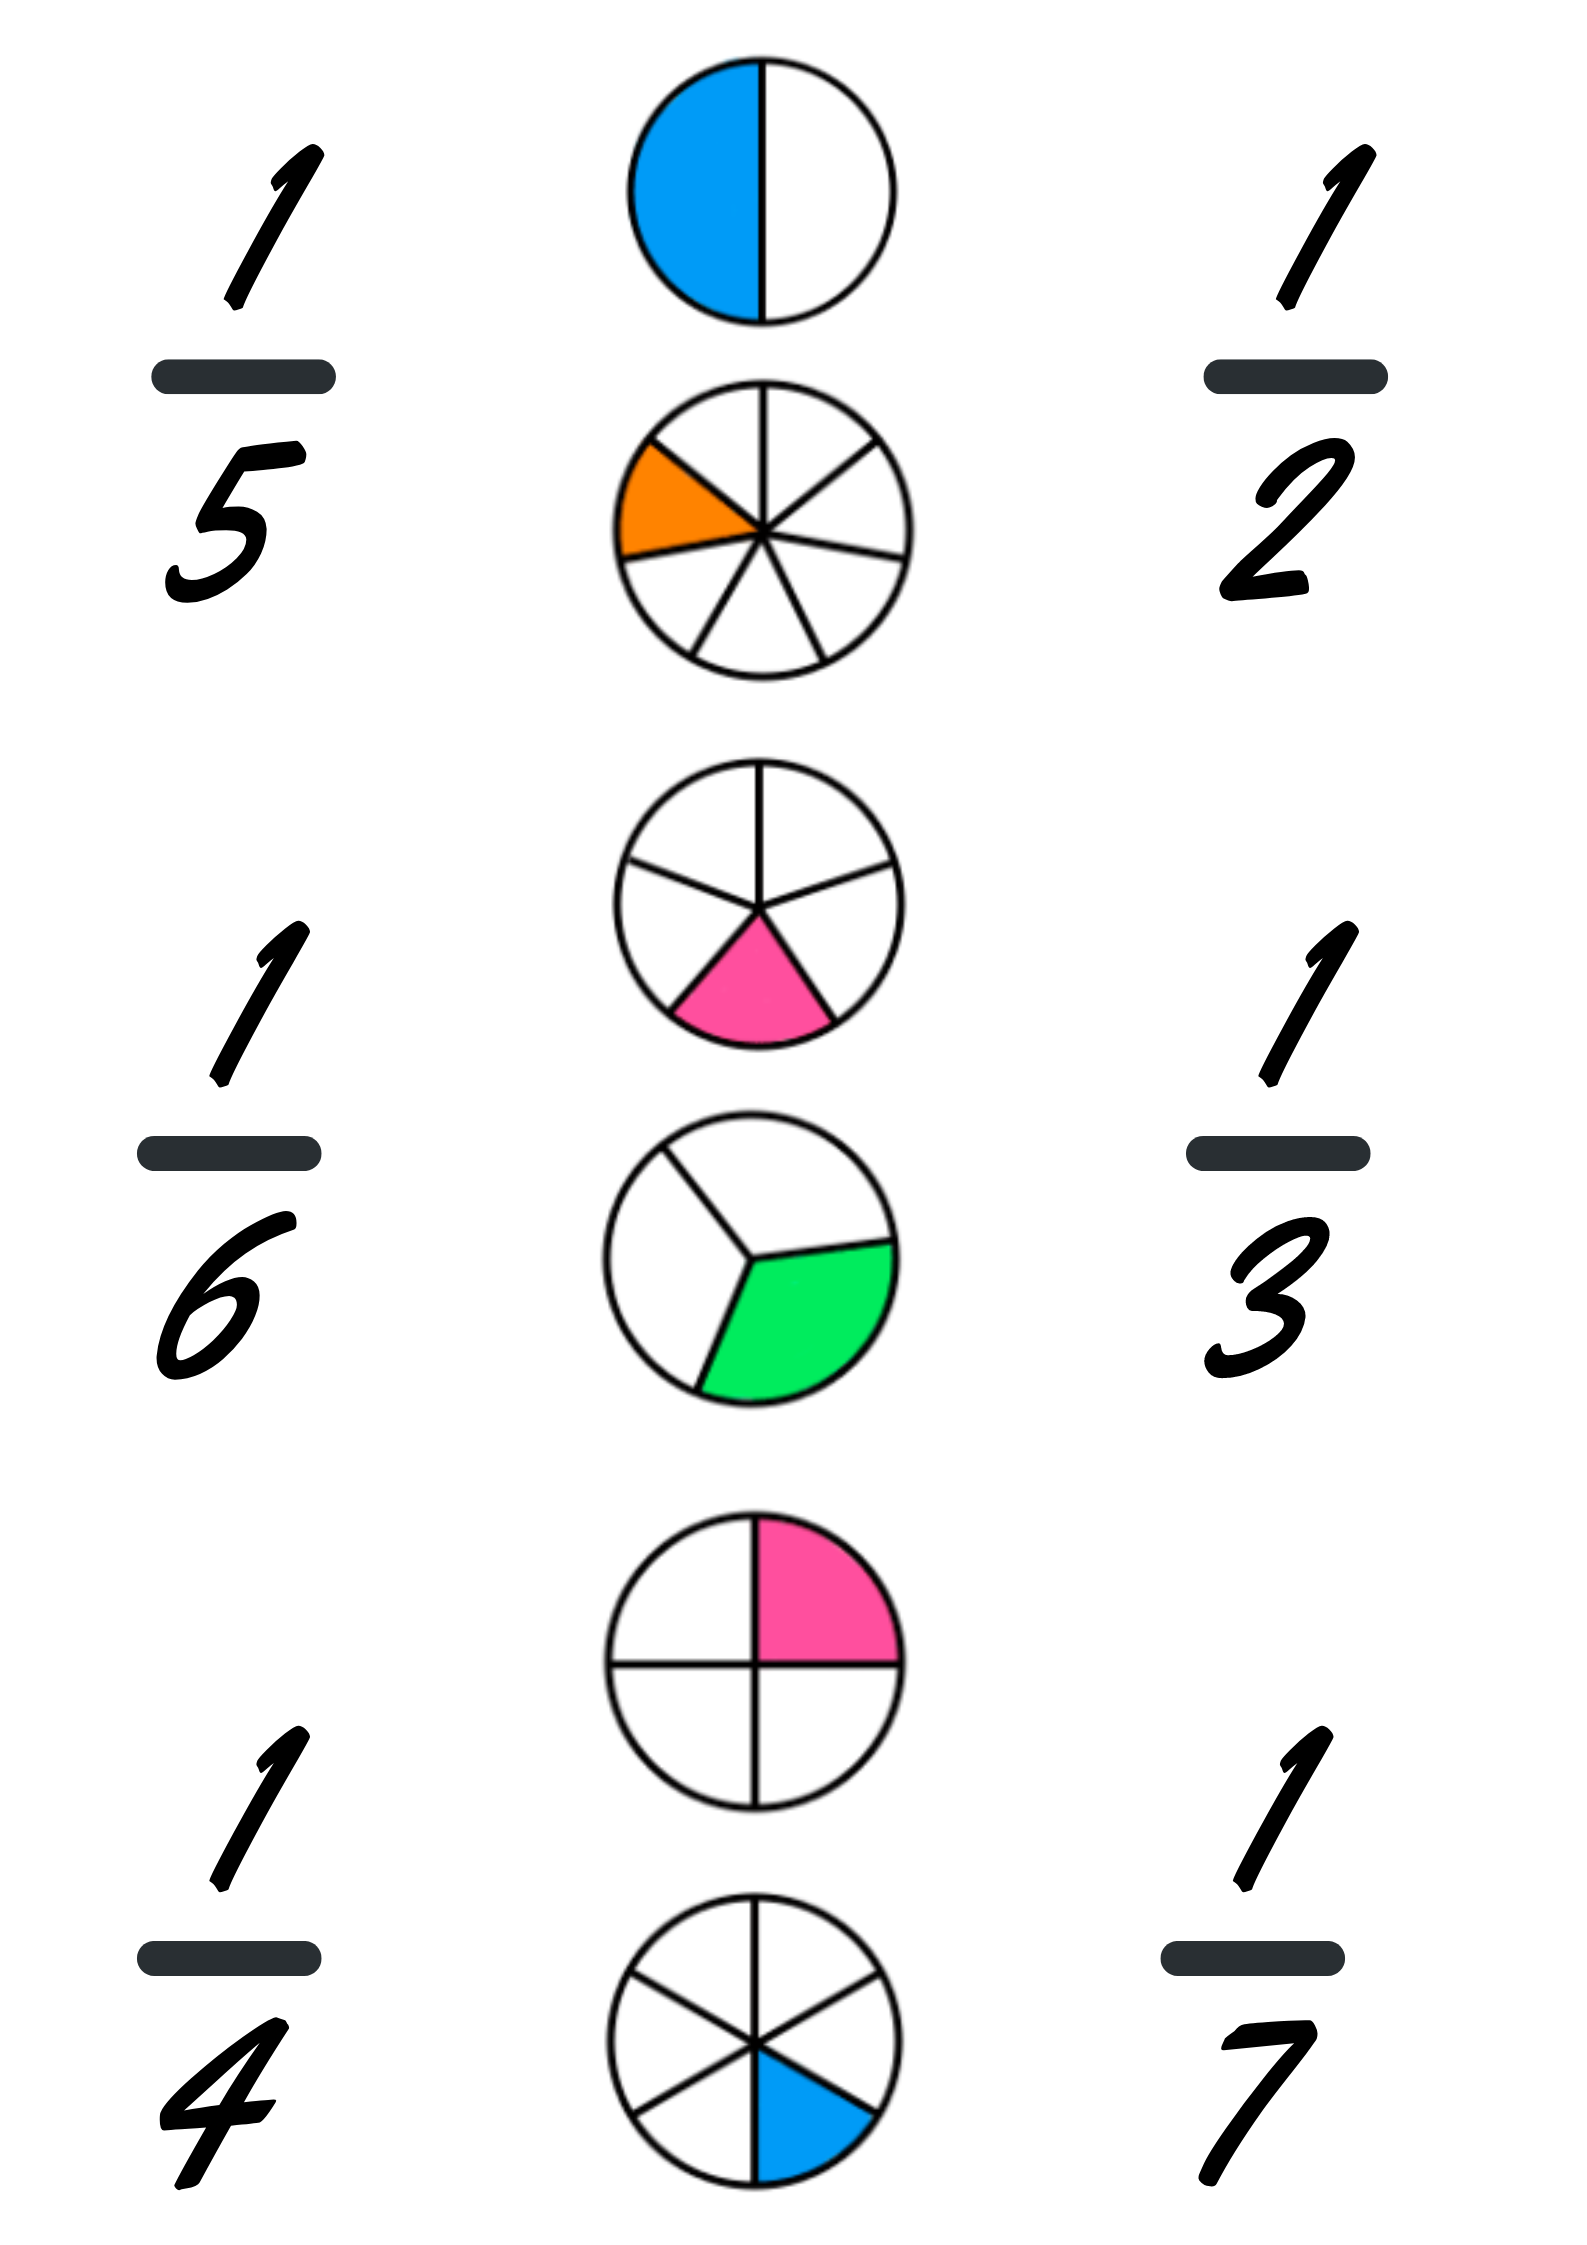 Varias fracciones representadas con círculos divididos